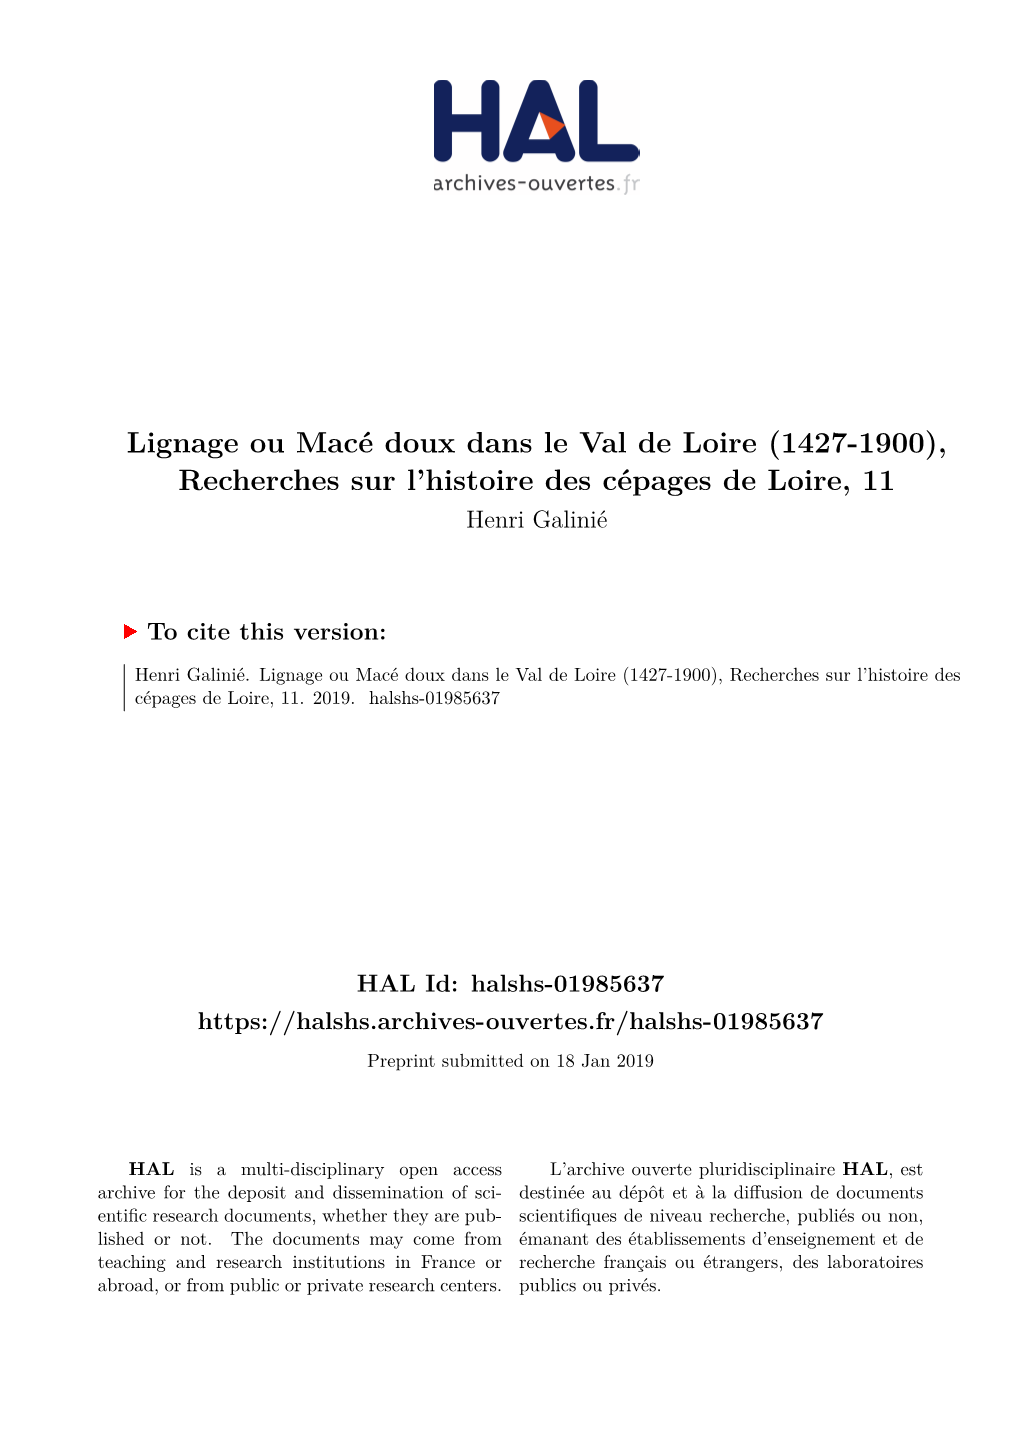 Lignage Ou Macé Doux Dans Le Val De Loire (1427-1900), Recherches Sur L’Histoire Des Cépages De Loire, 11 Henri Galinié